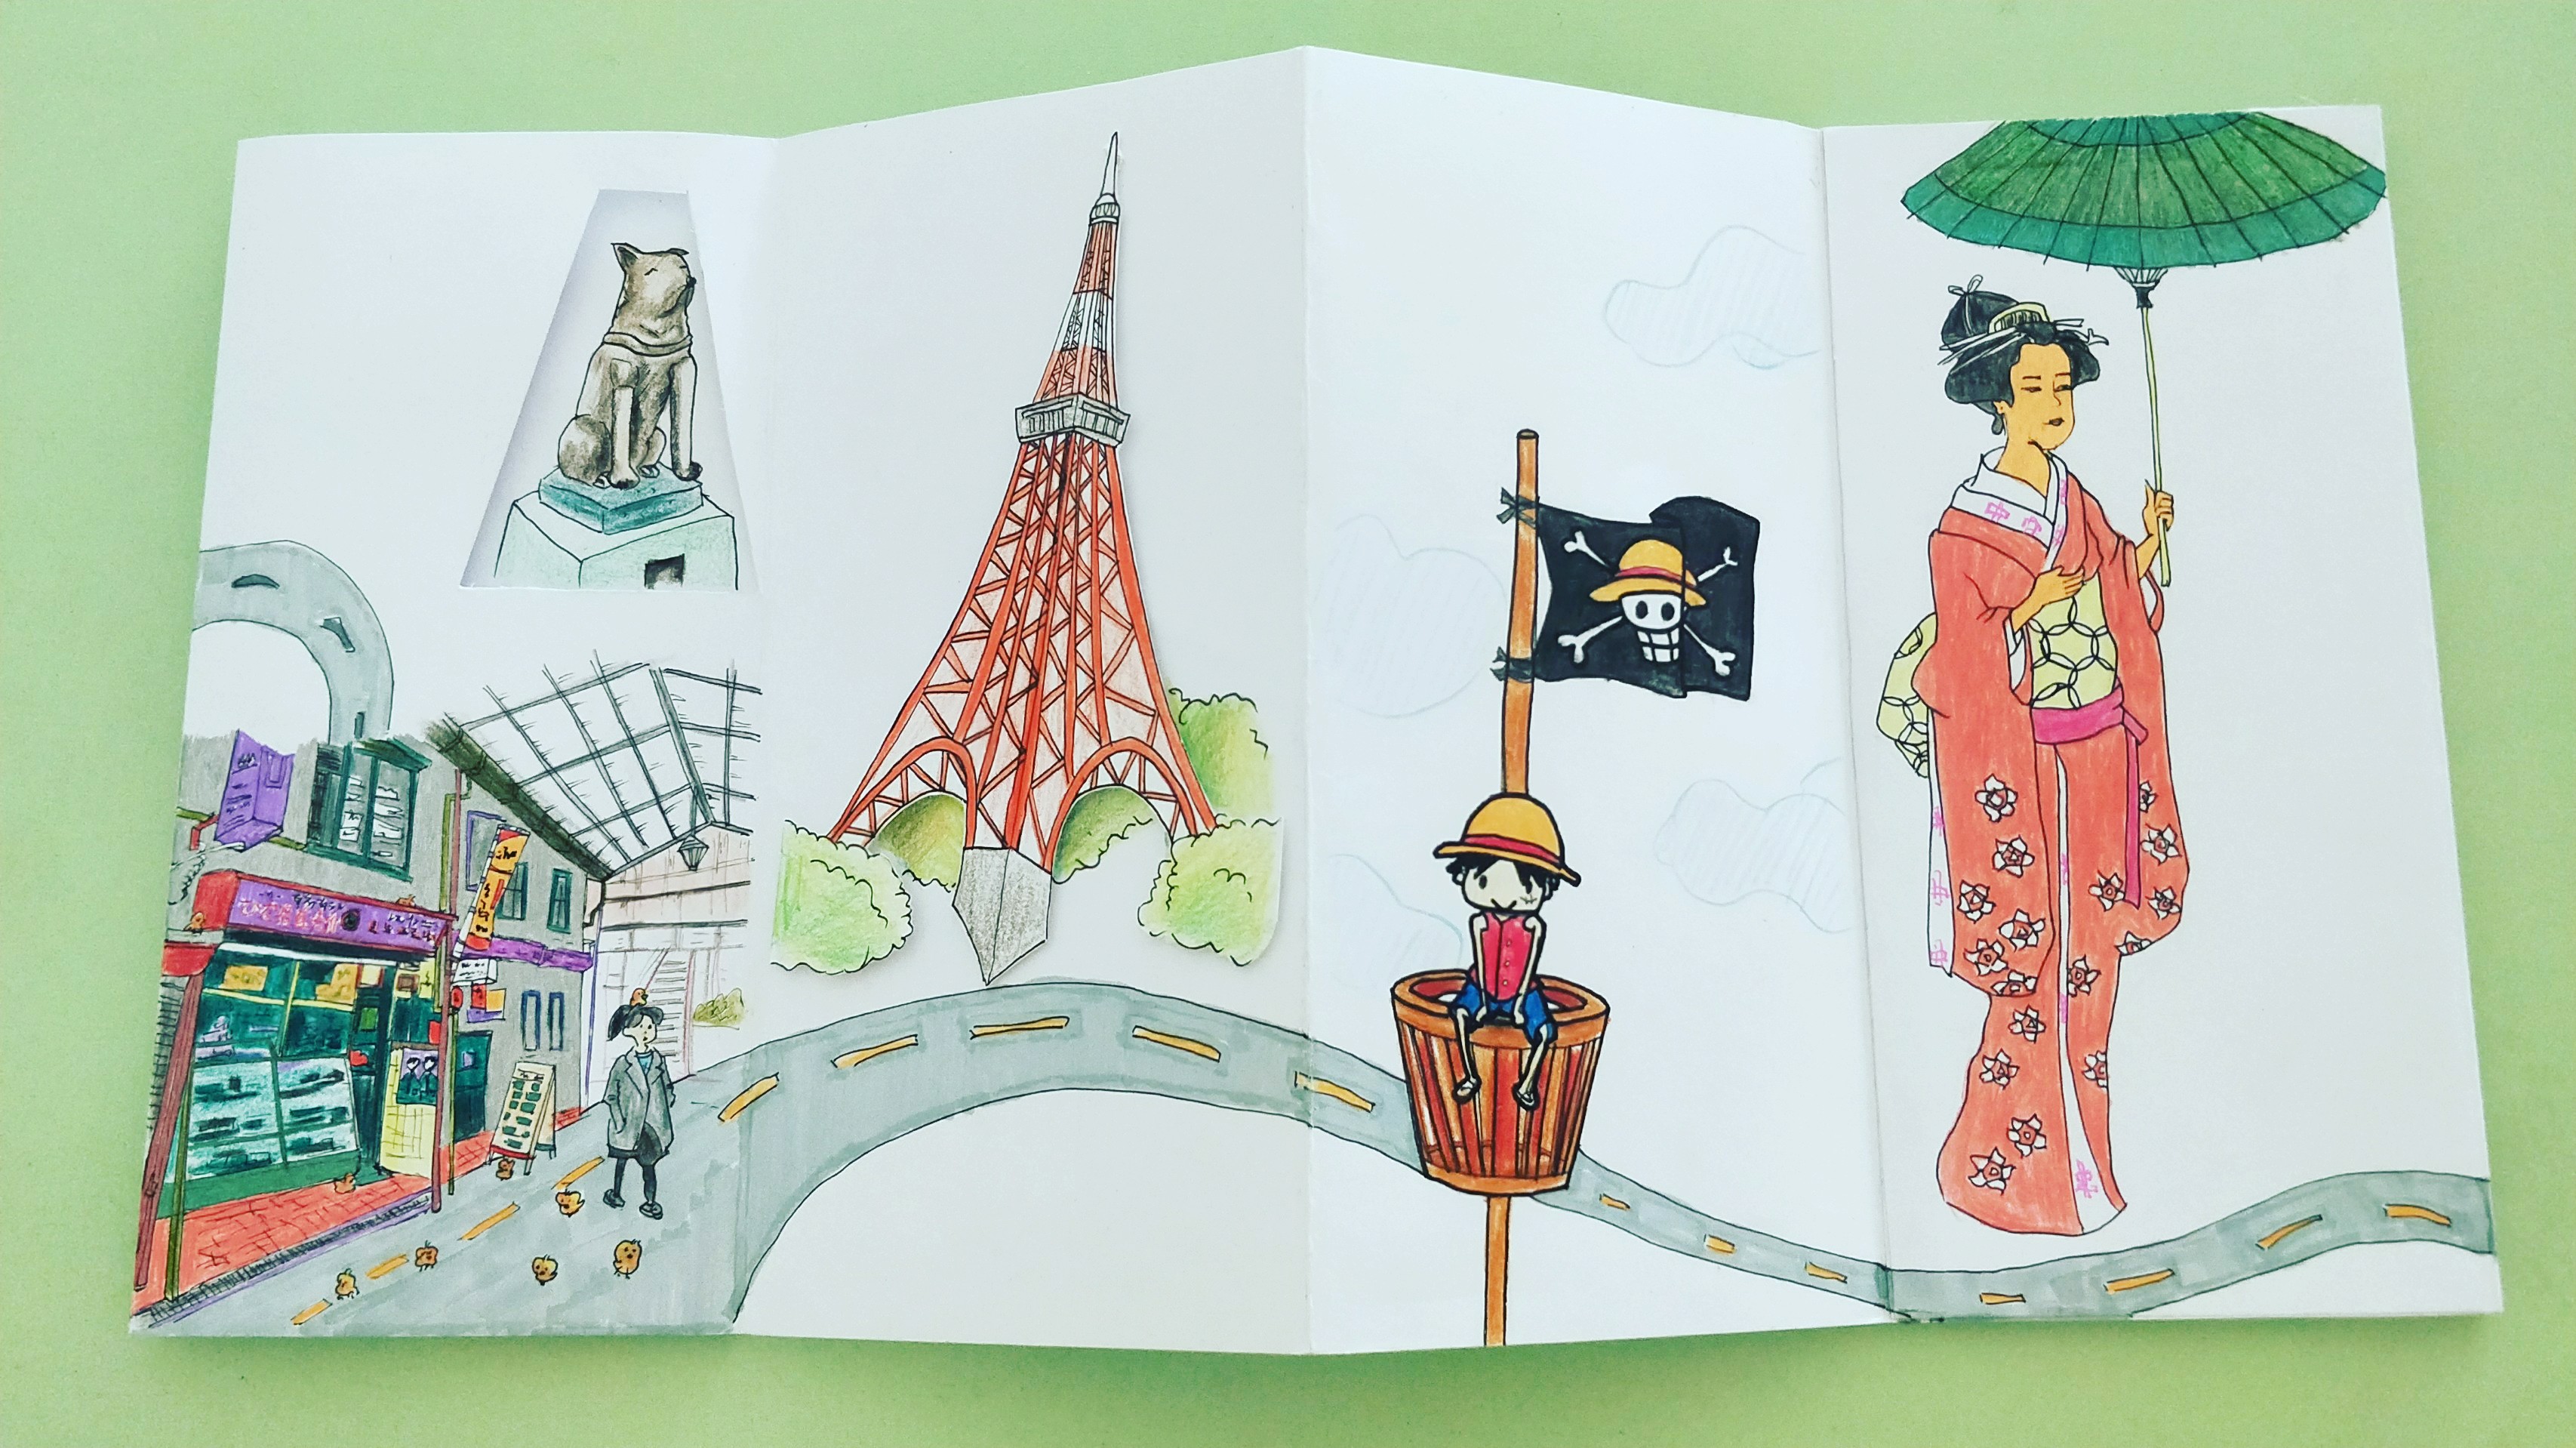 幼儿园自制旅游画册图片